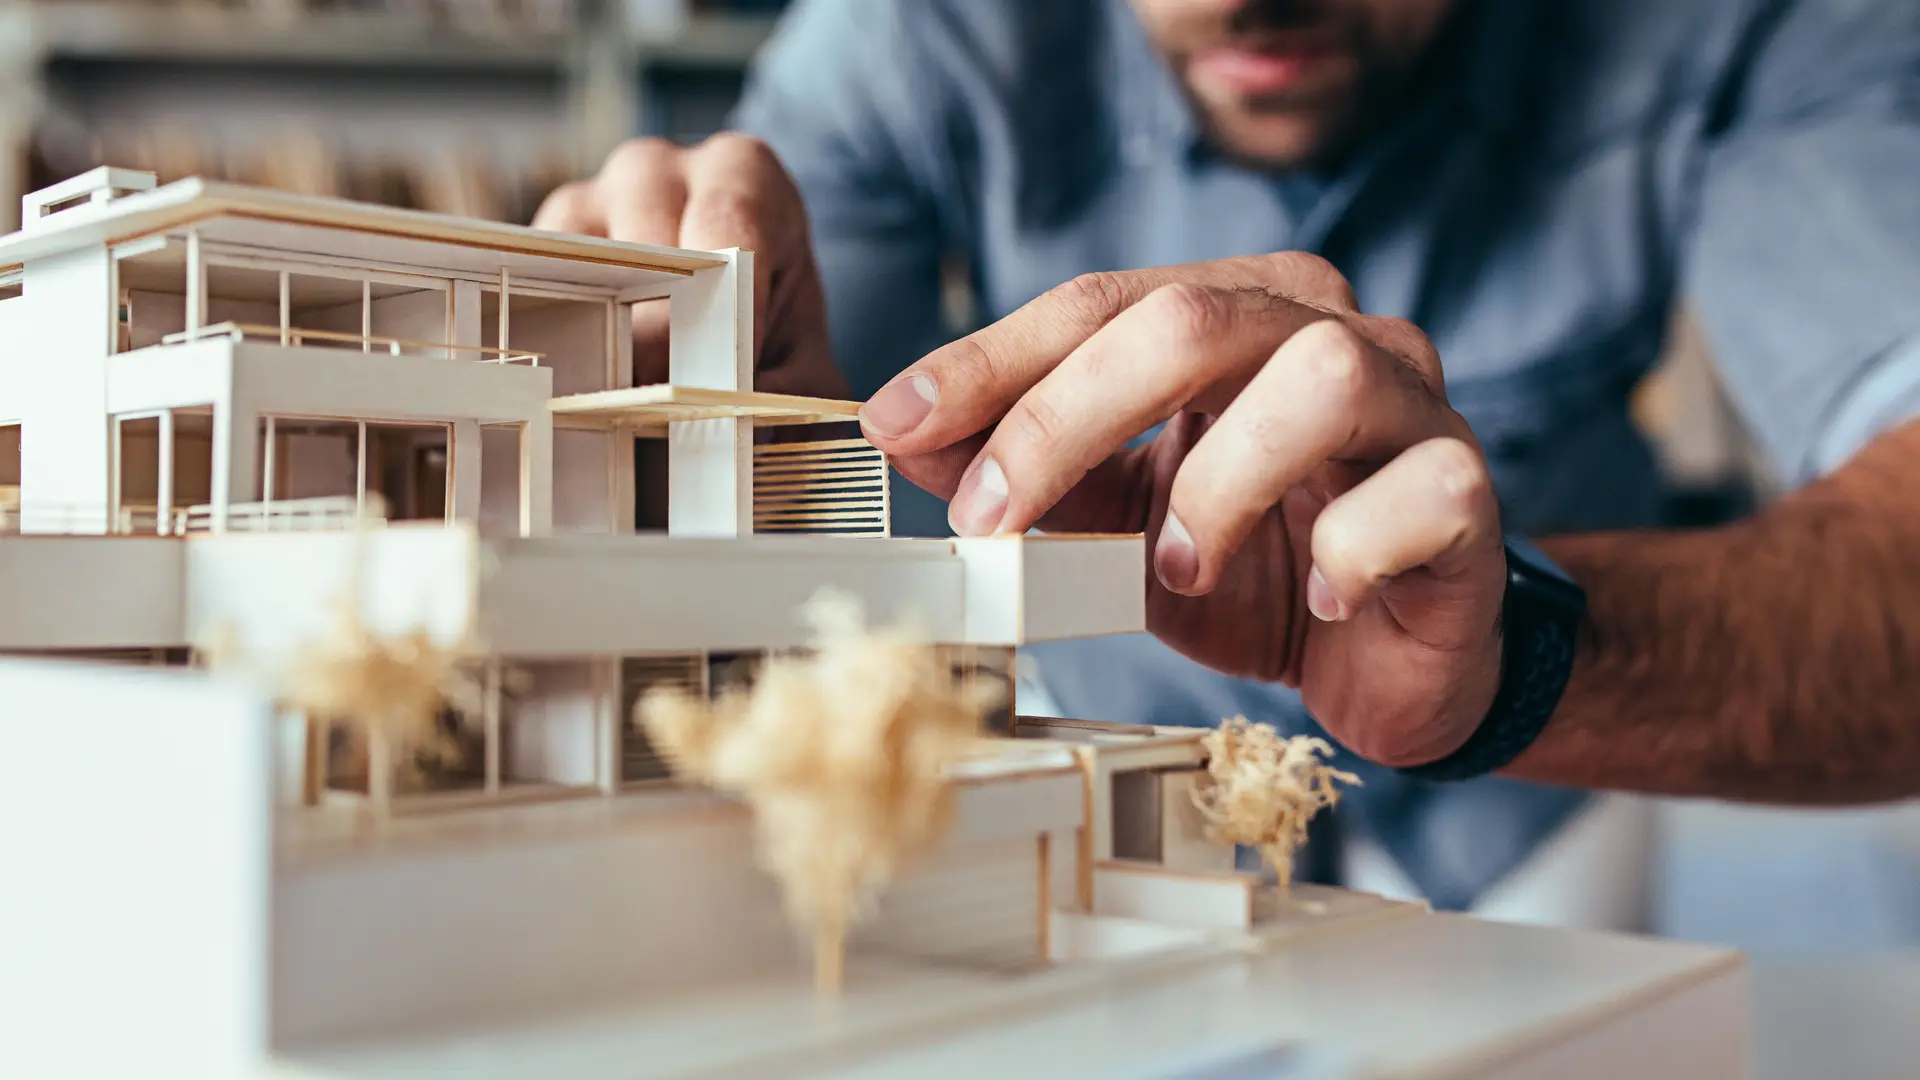 Ein Architekturmodell eines Hauses wird per Hand bearbeitet